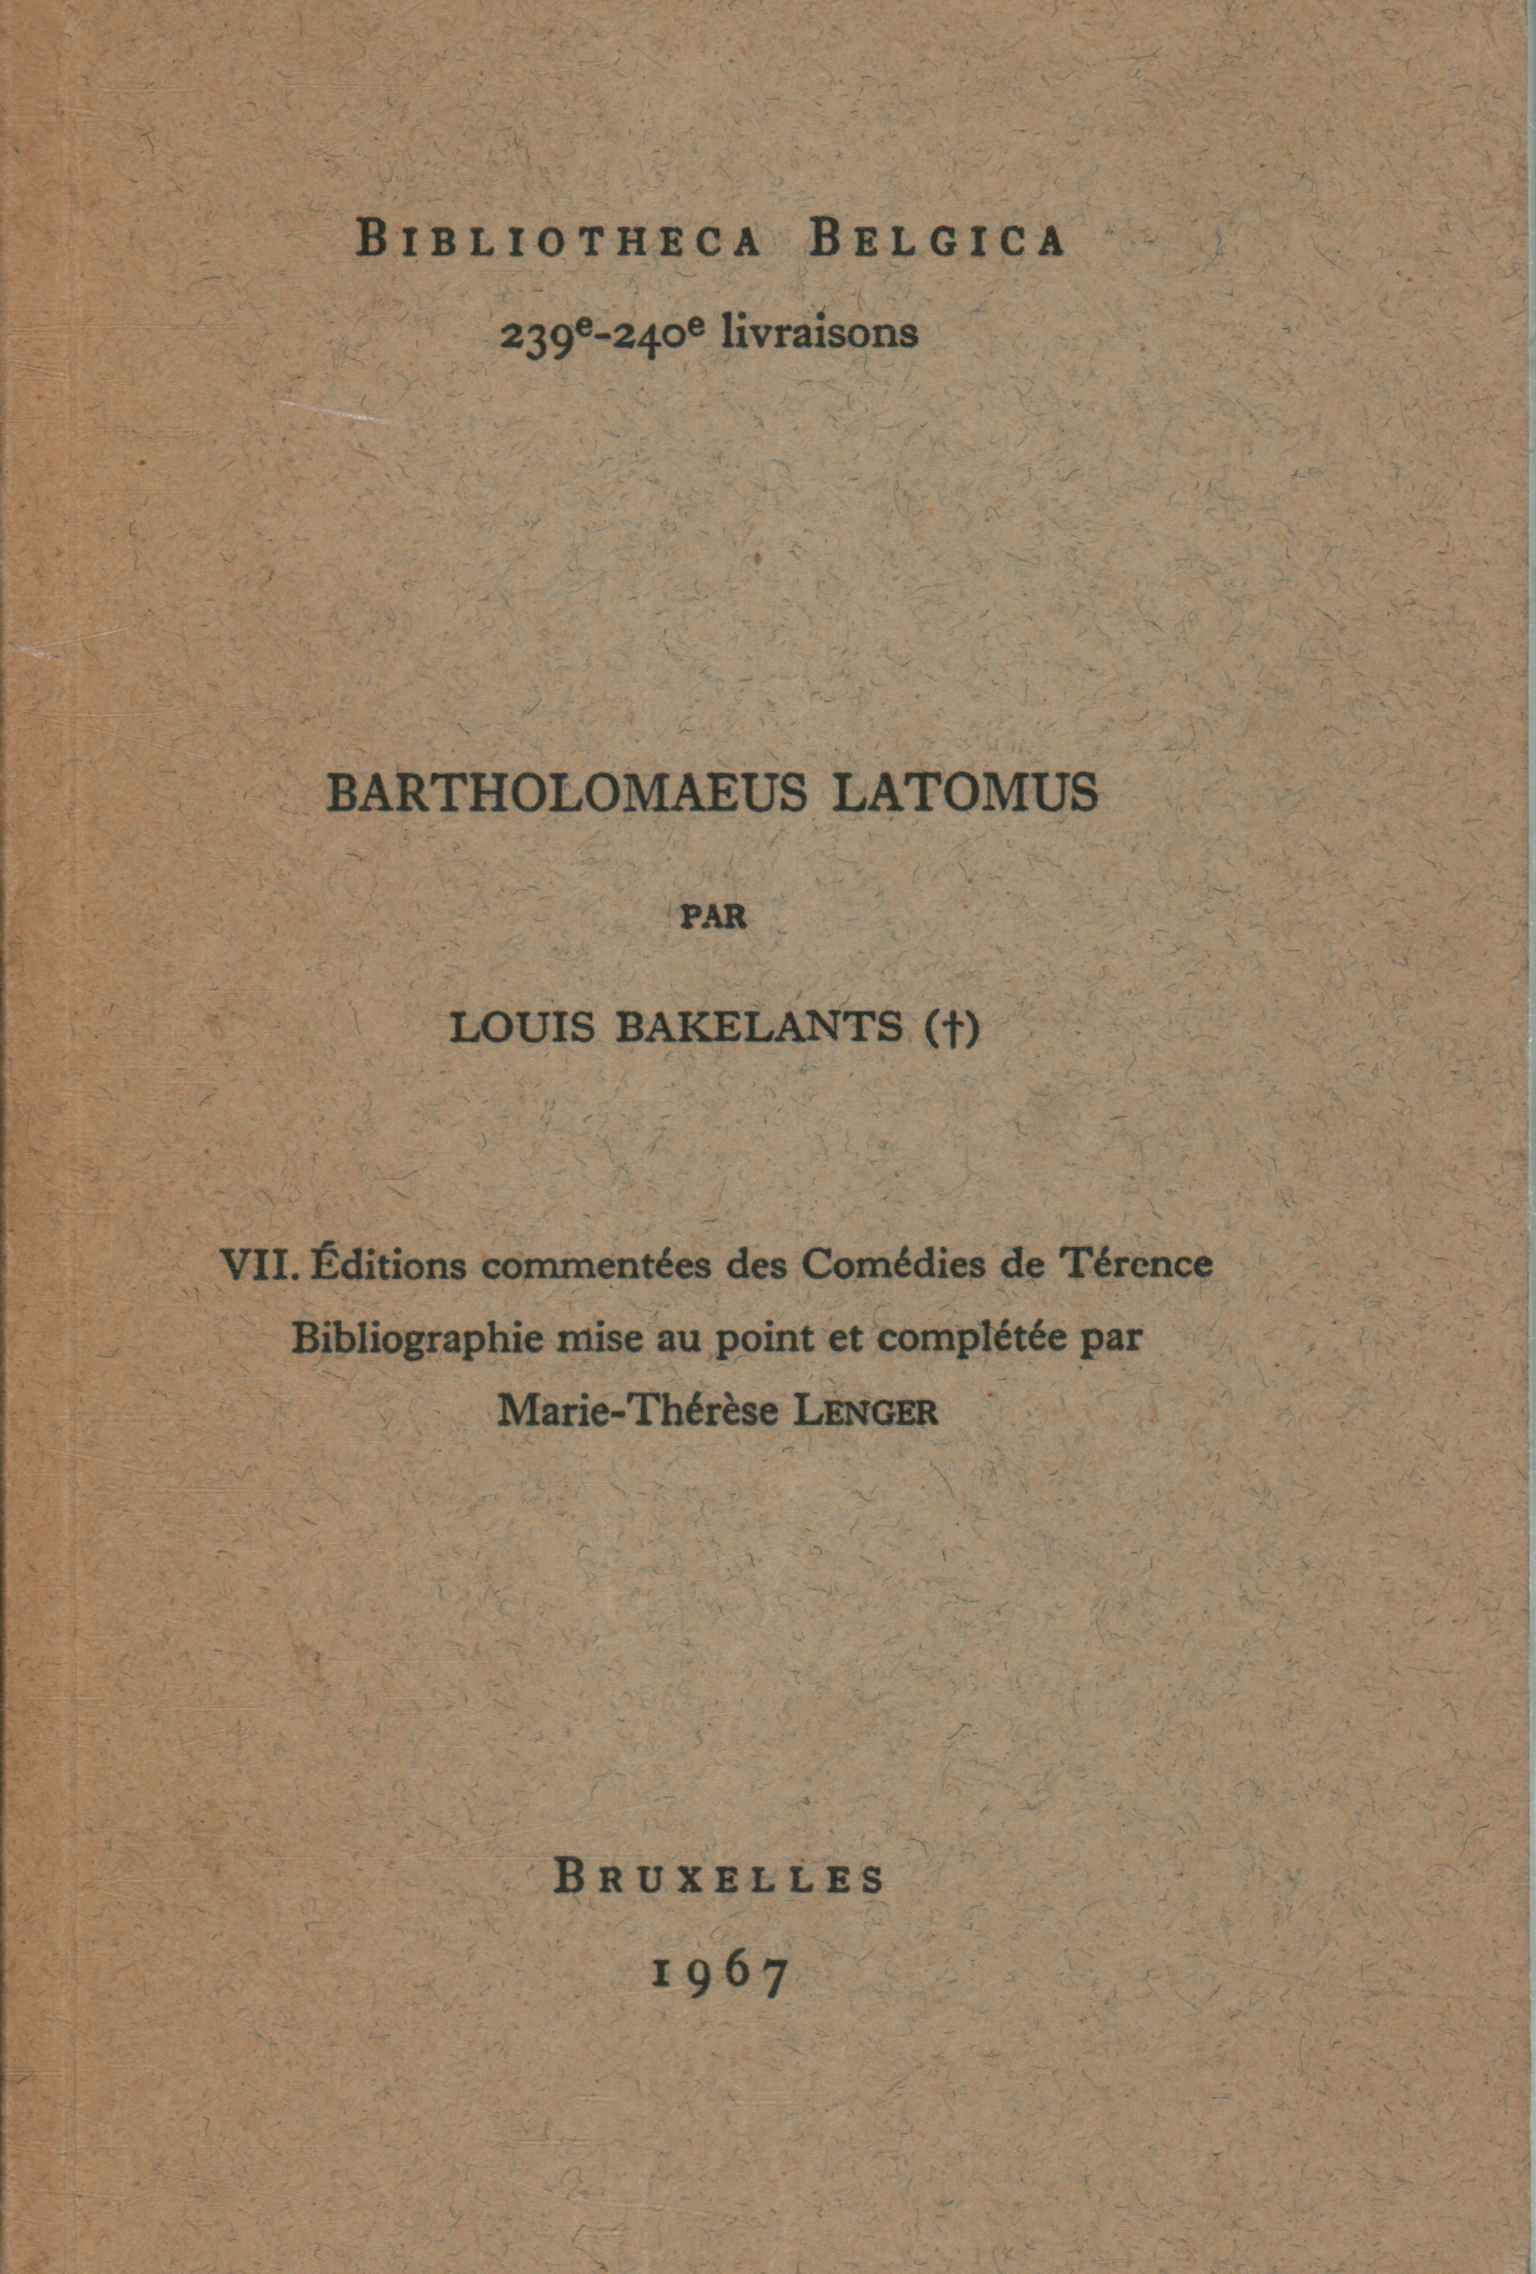 Bartholomaeus Latomus